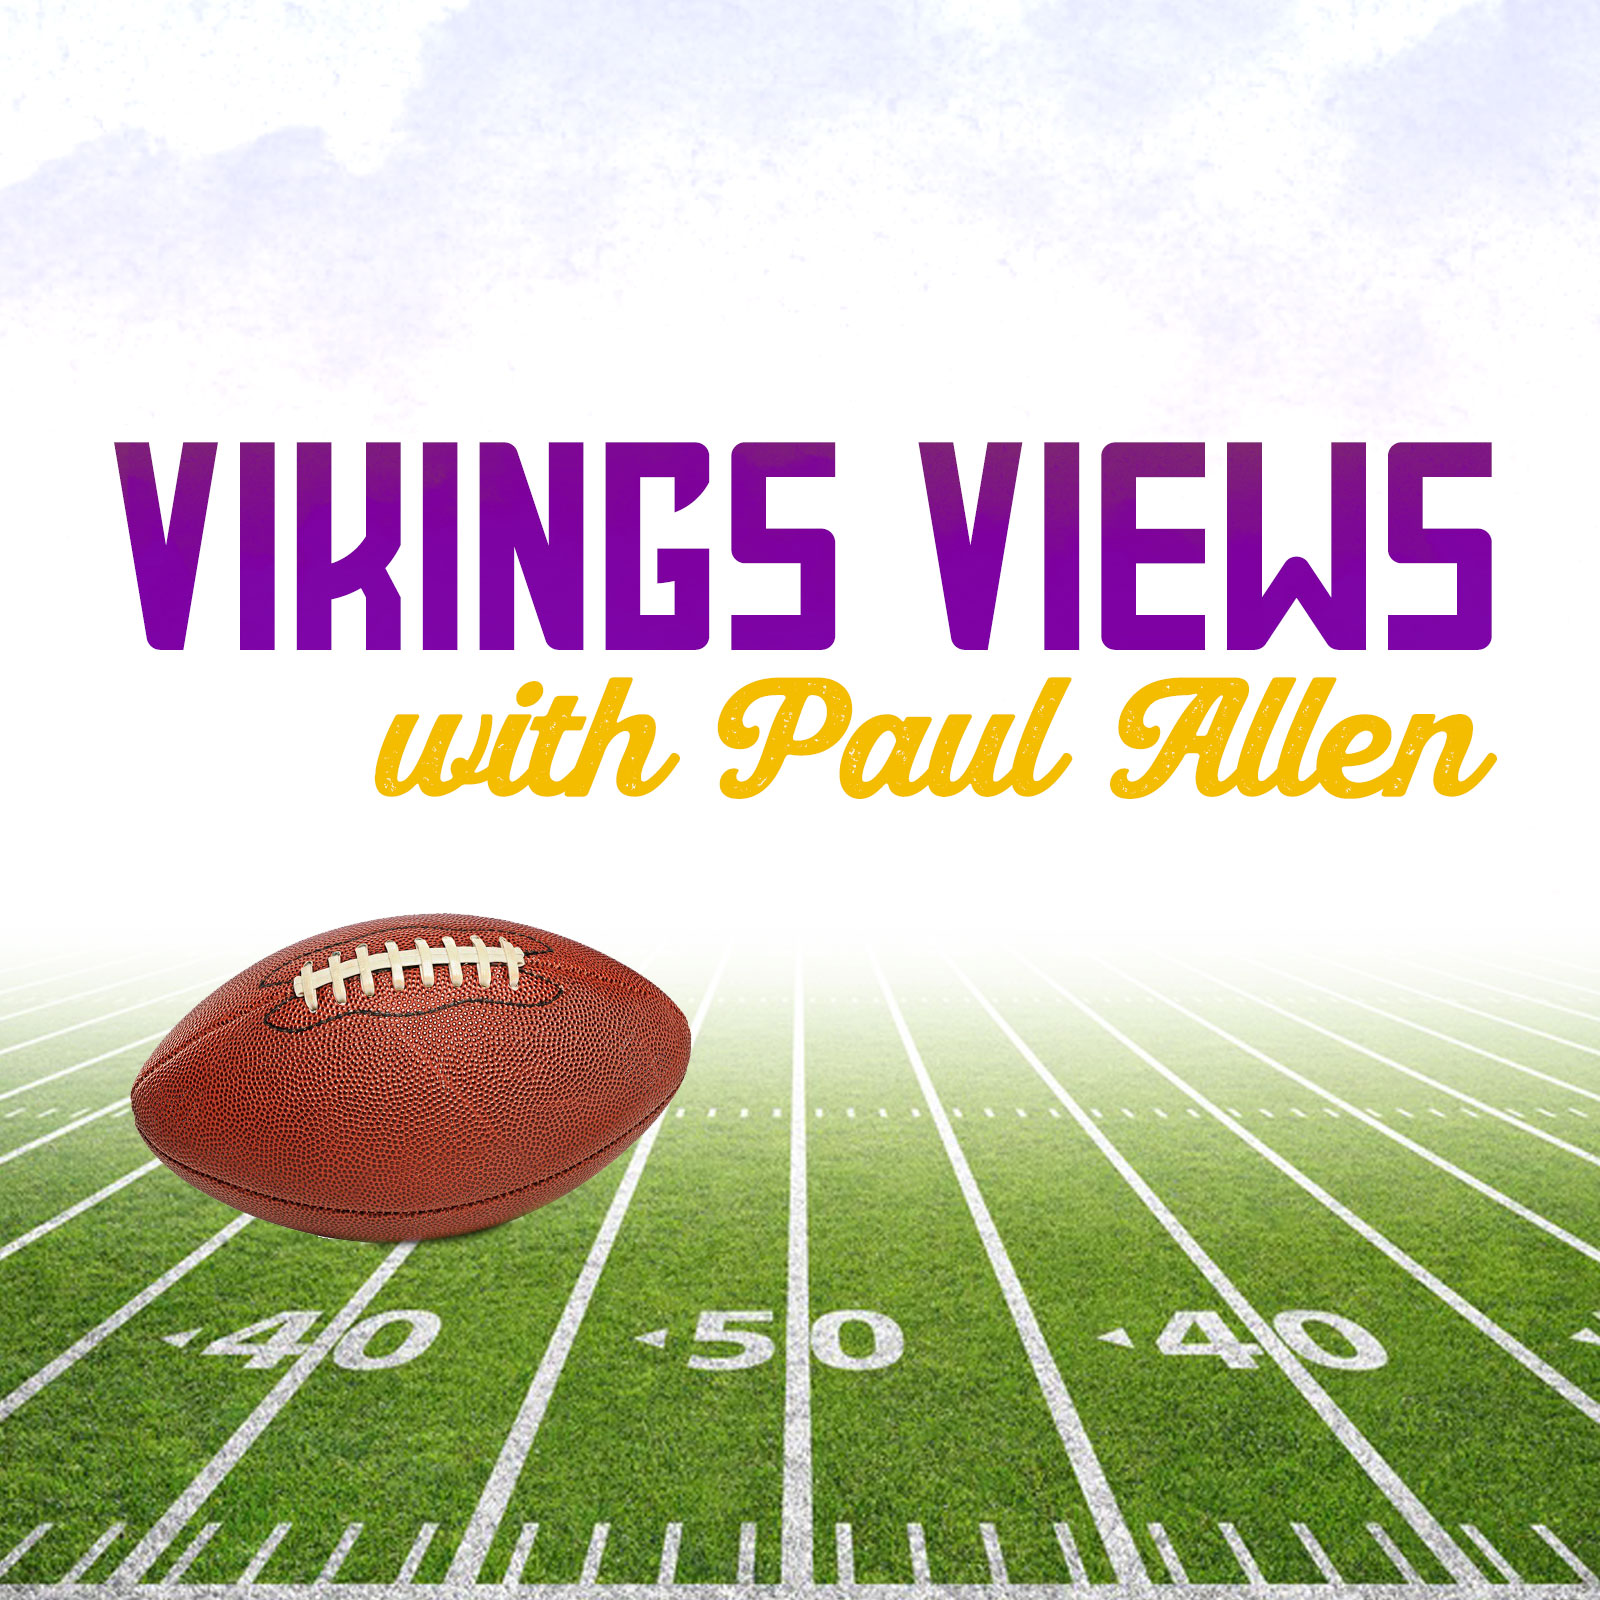 Vikings Views with Paul Allen